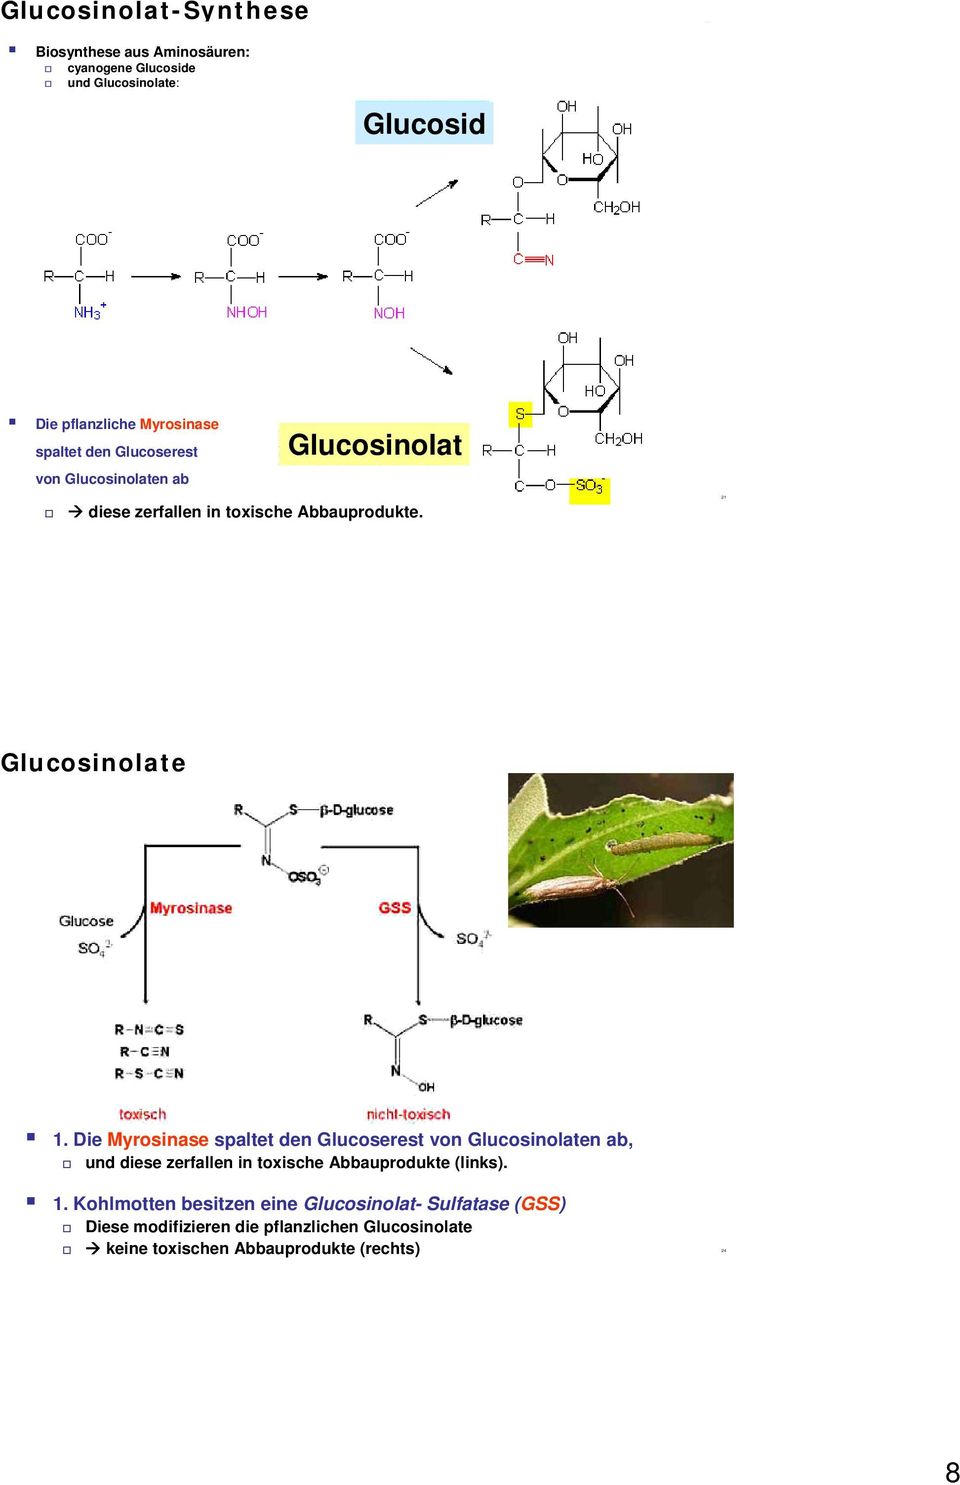 Die Myrosinase spaltet den Glucoserest von Glucosinolaten ab, und diese zerfallen in toxische Abbauprodukte (links). 1.